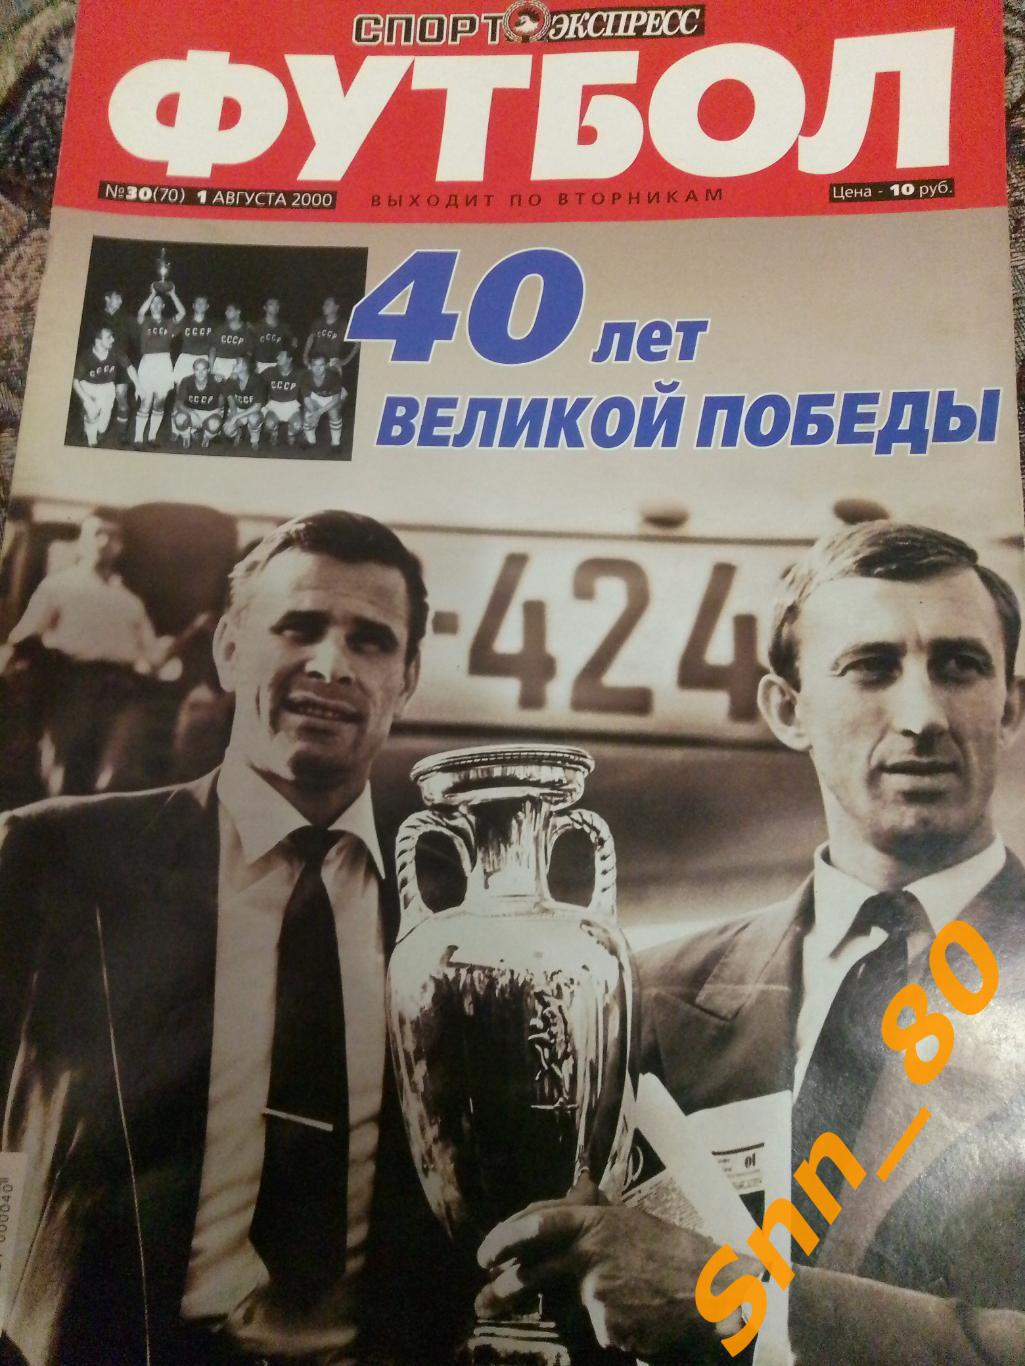 Спорт-Экспресс ФУТБОЛ №30 01.08.2000